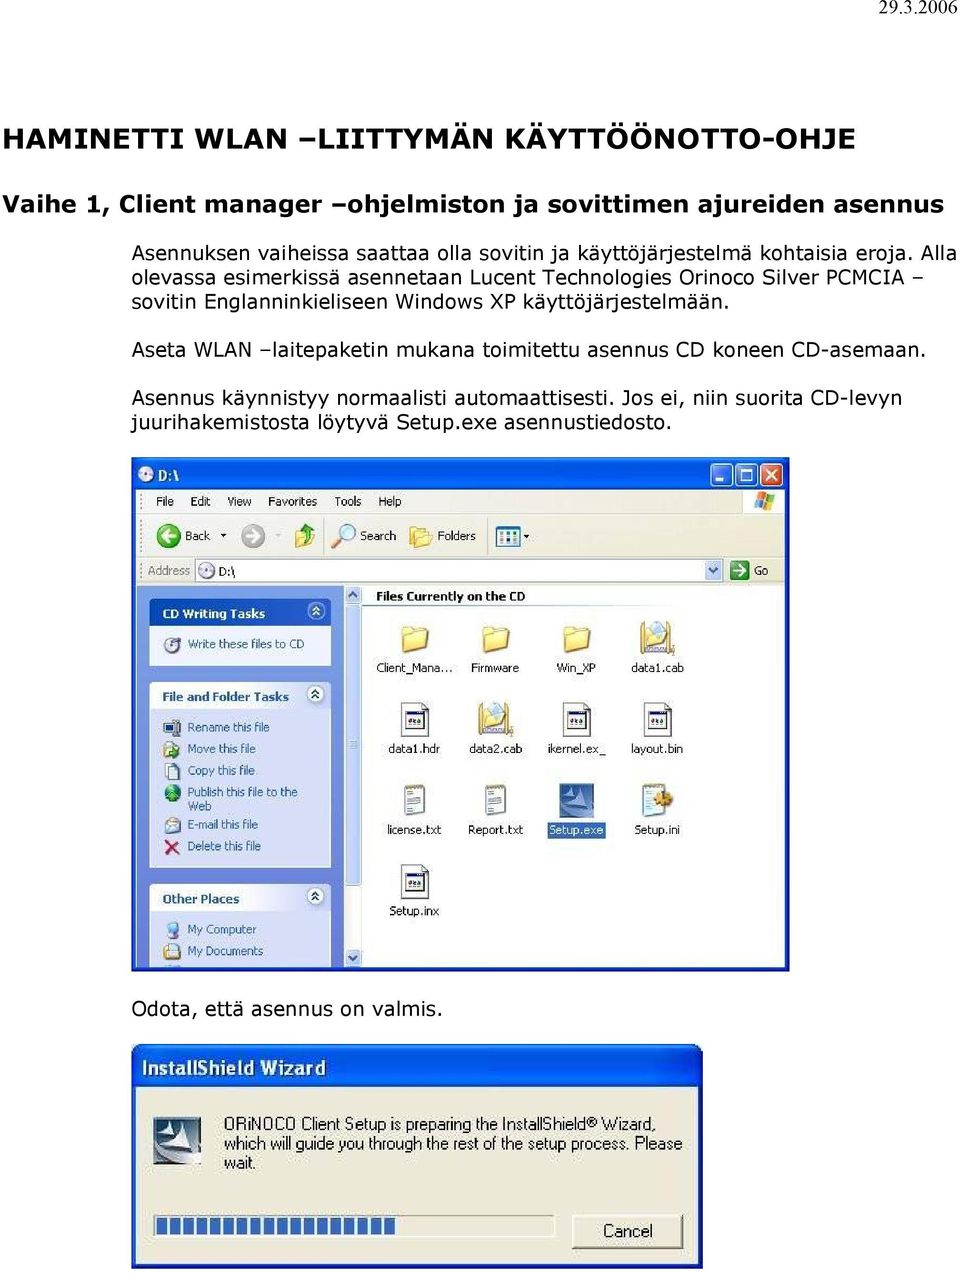 Alla olevassa esimerkissä asennetaan Lucent Technologies Orinoco Silver PCMCIA sovitin Englanninkieliseen Windows XP käyttöjärjestelmään.